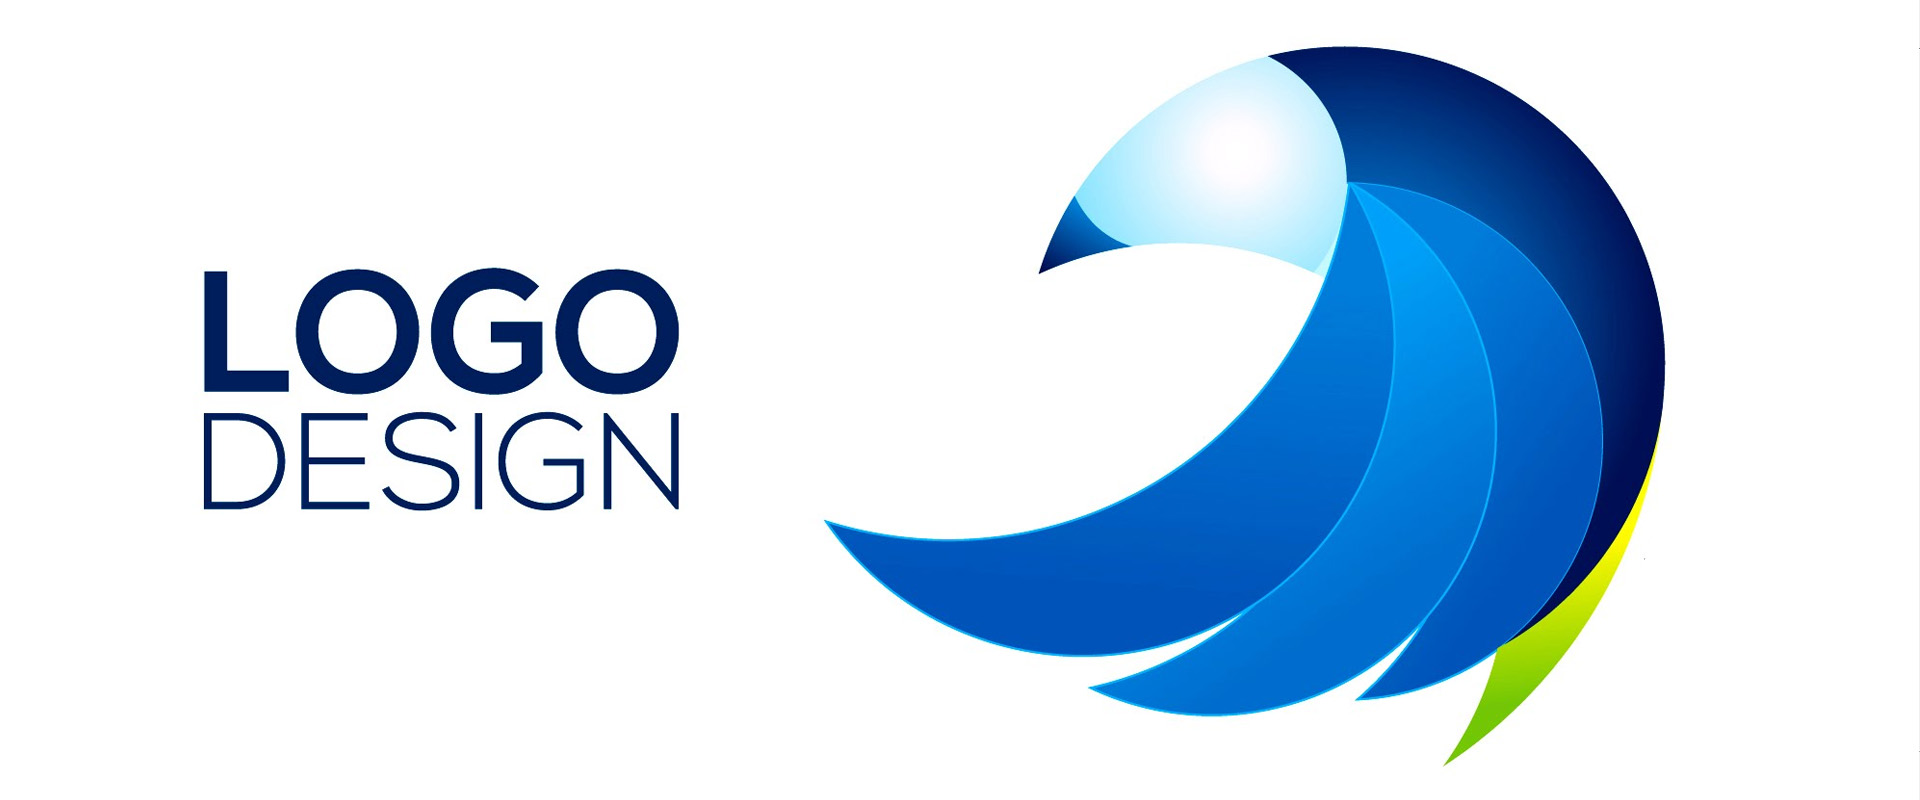 Logo Perusahaan yang Menarik dan Informatif - Uprint.id